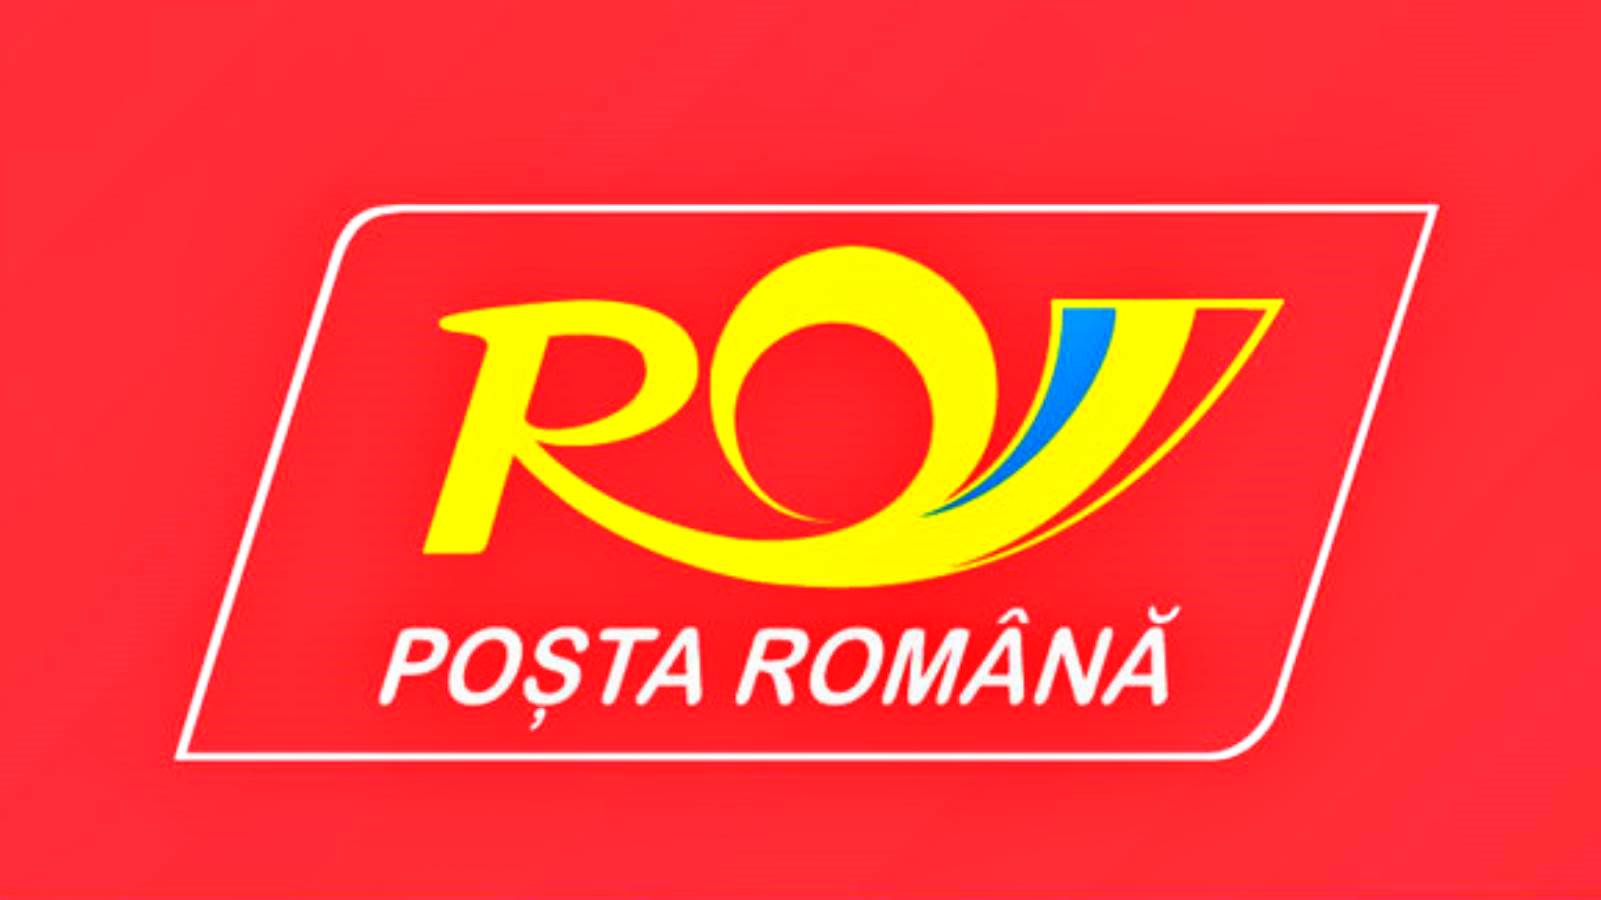 Rumänsk postvarning angående förbjudna föremål i paket